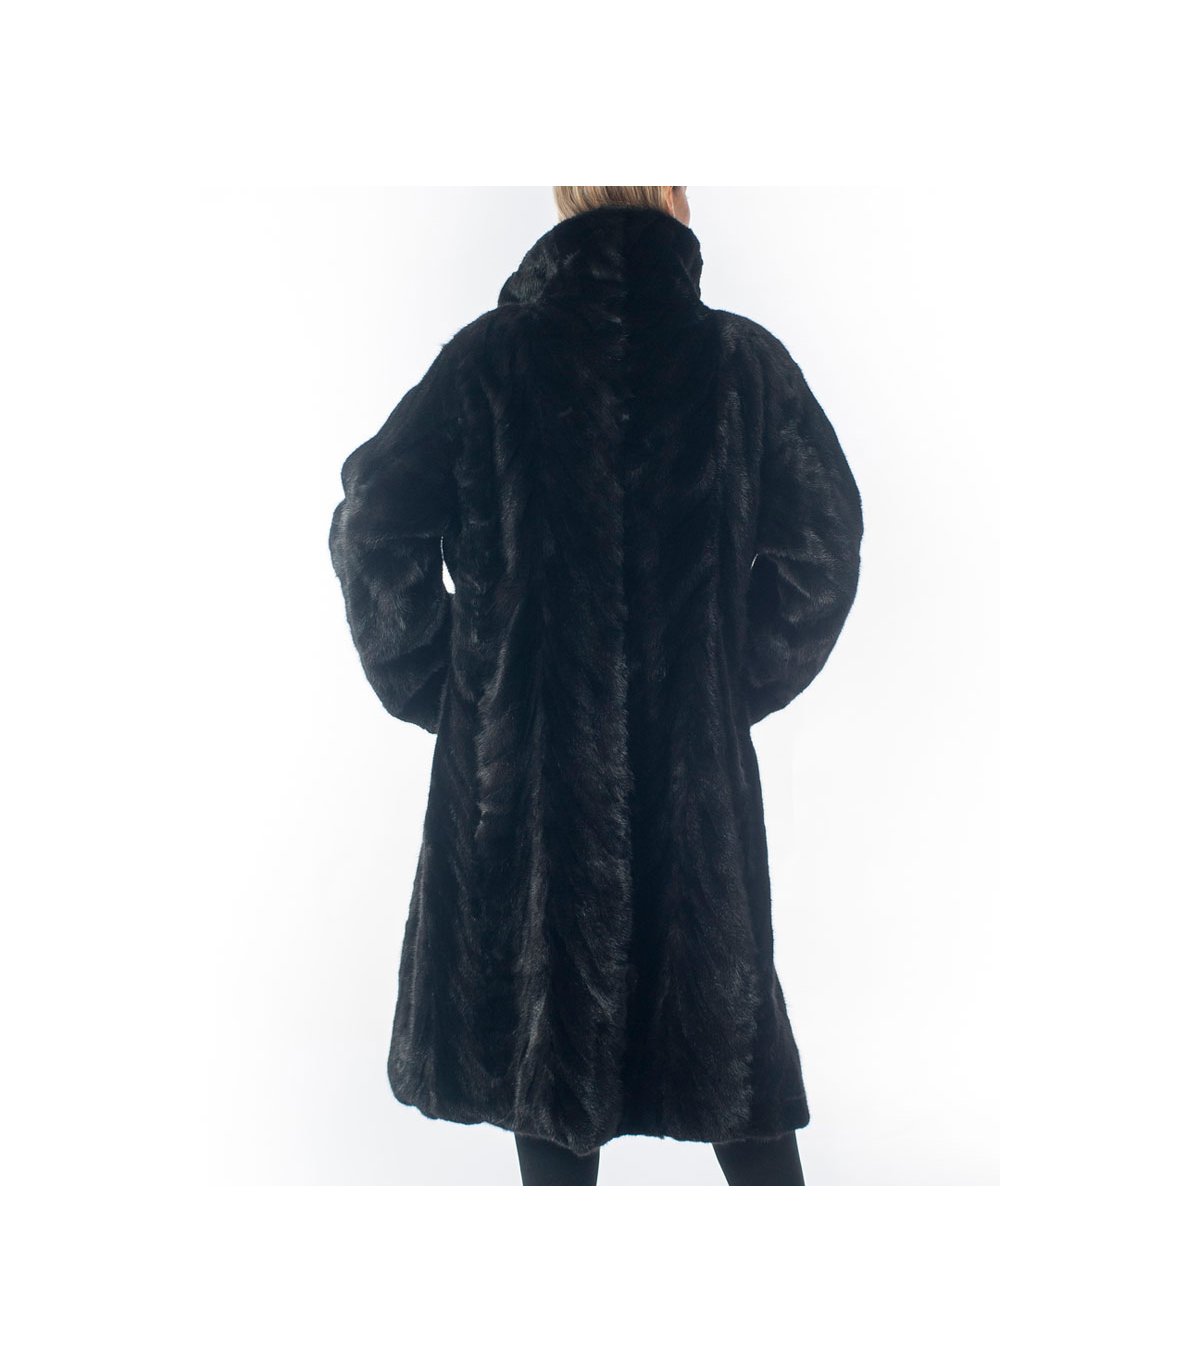 Shop for Black Mink Fur Coat at Fursource